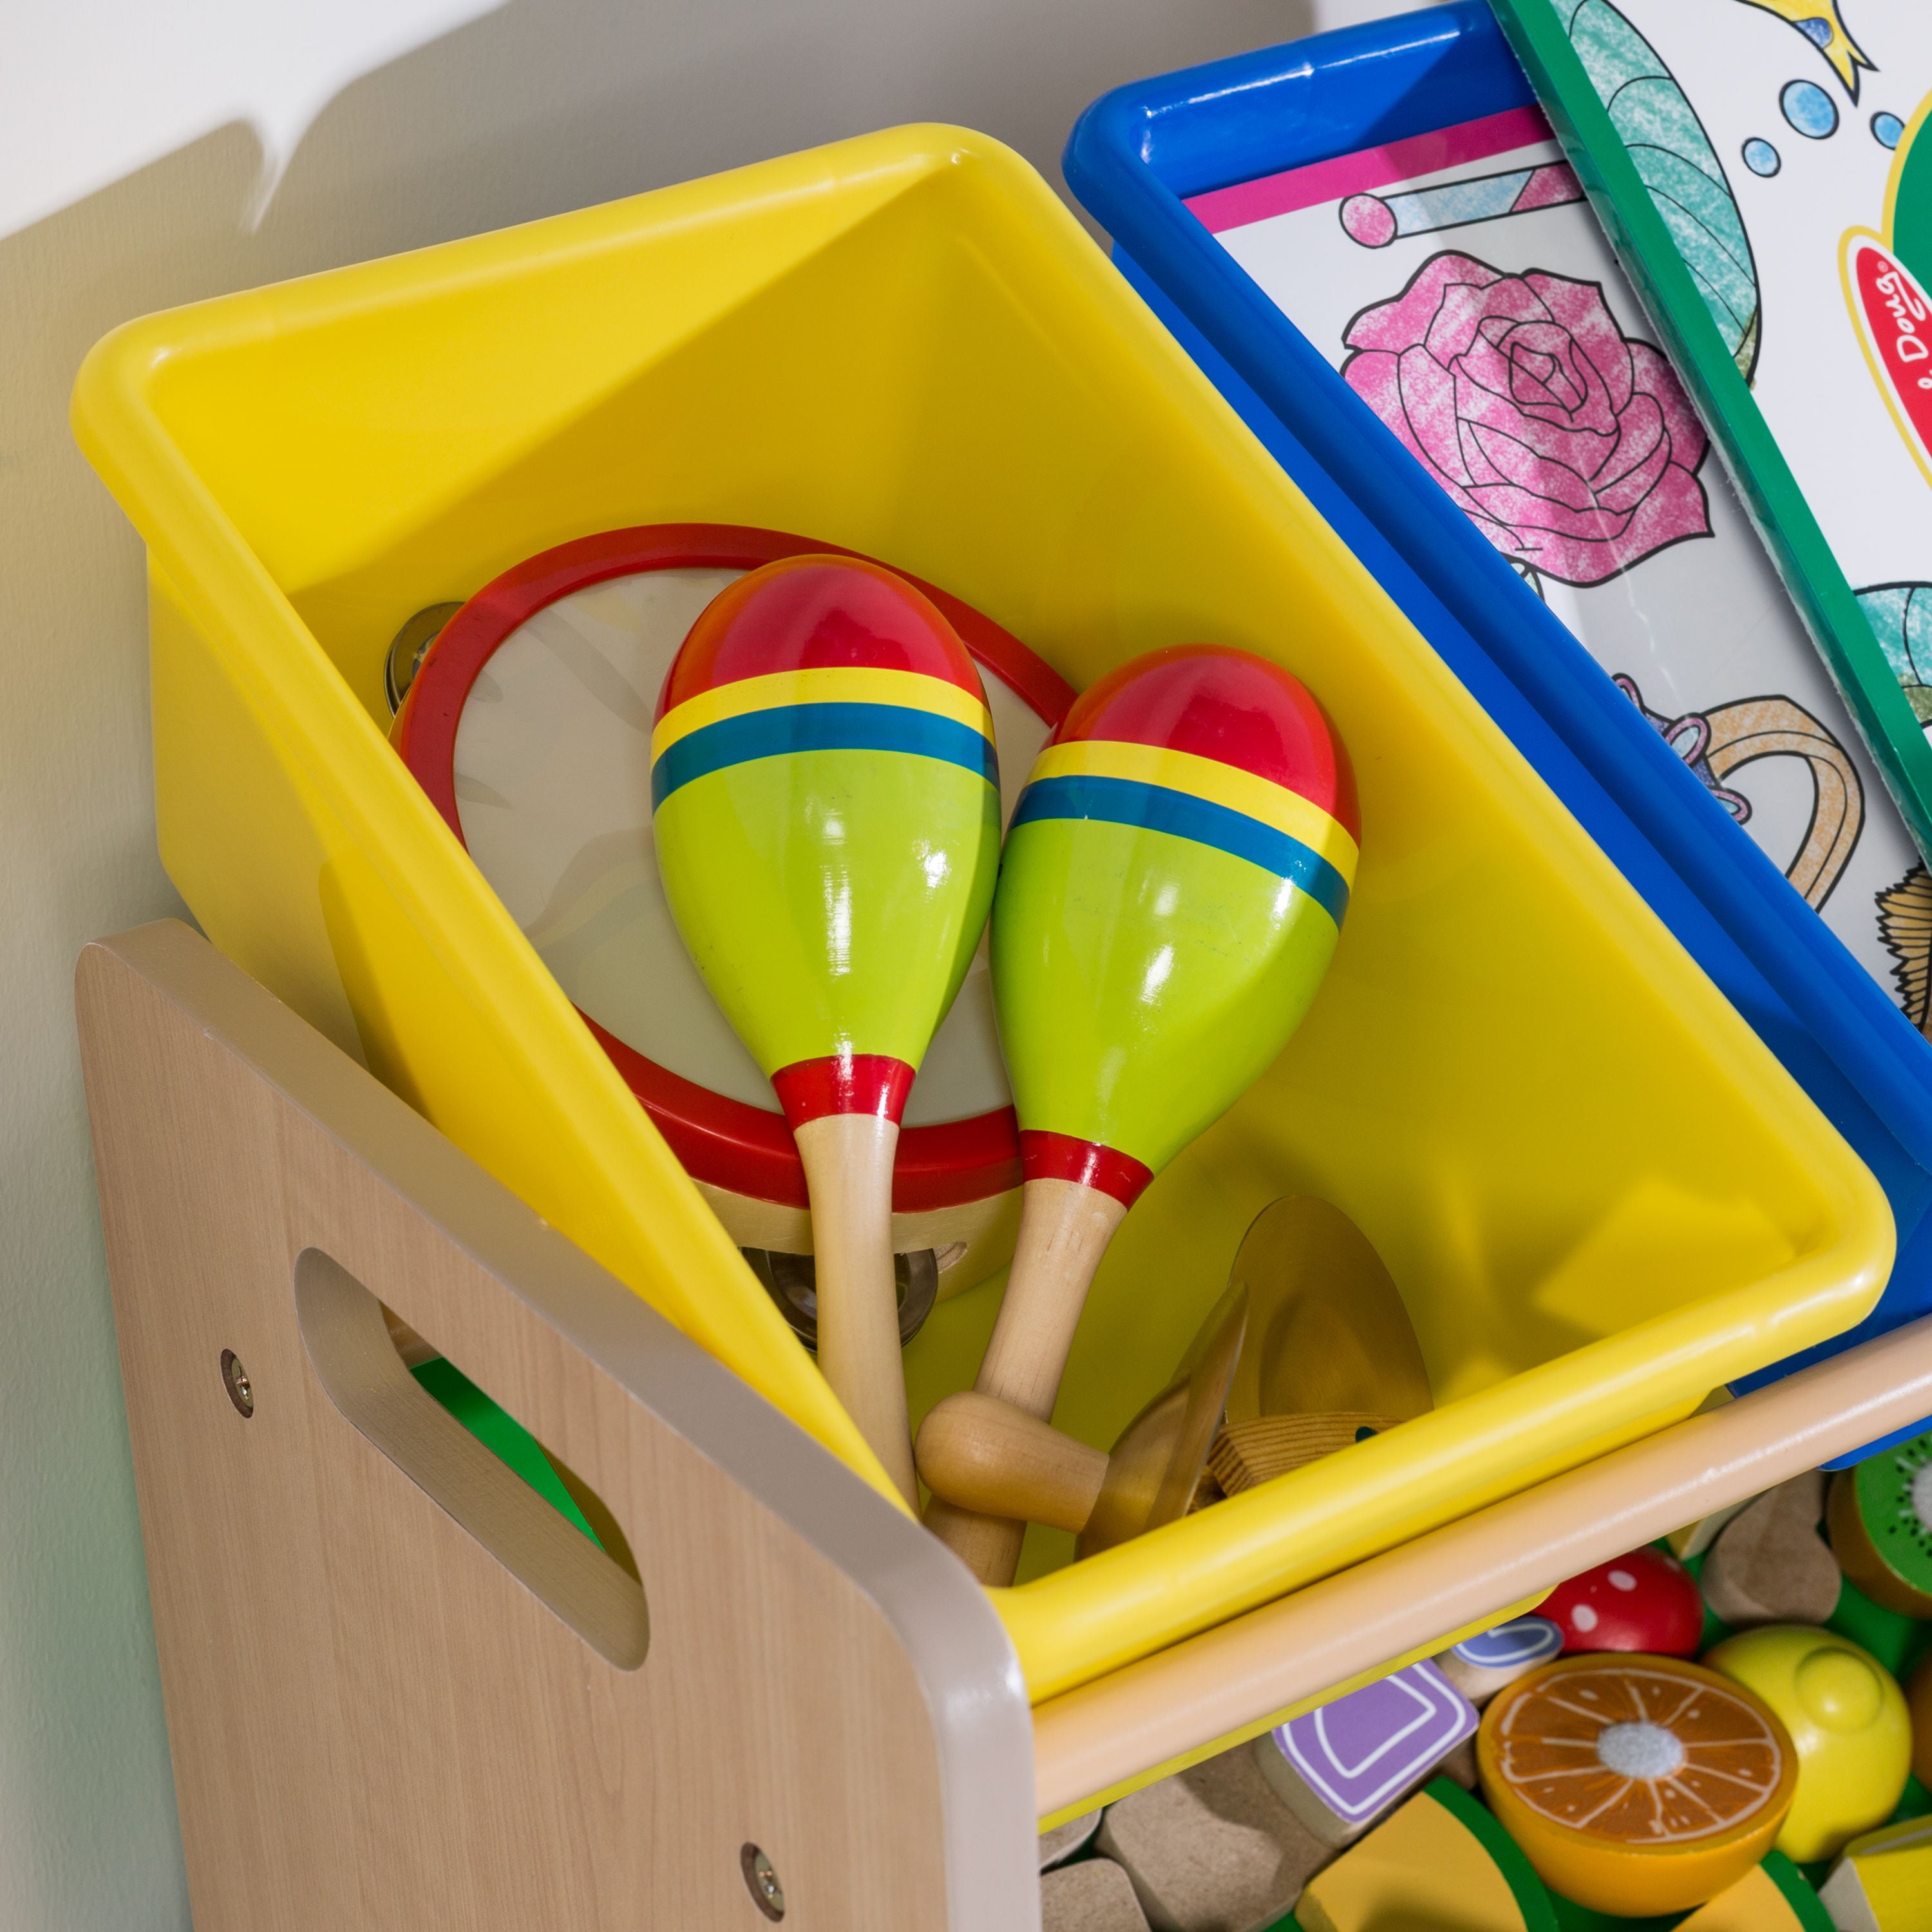 Honey Can Do Kids Toy Organizer With 12 Storage Bins, Gray 